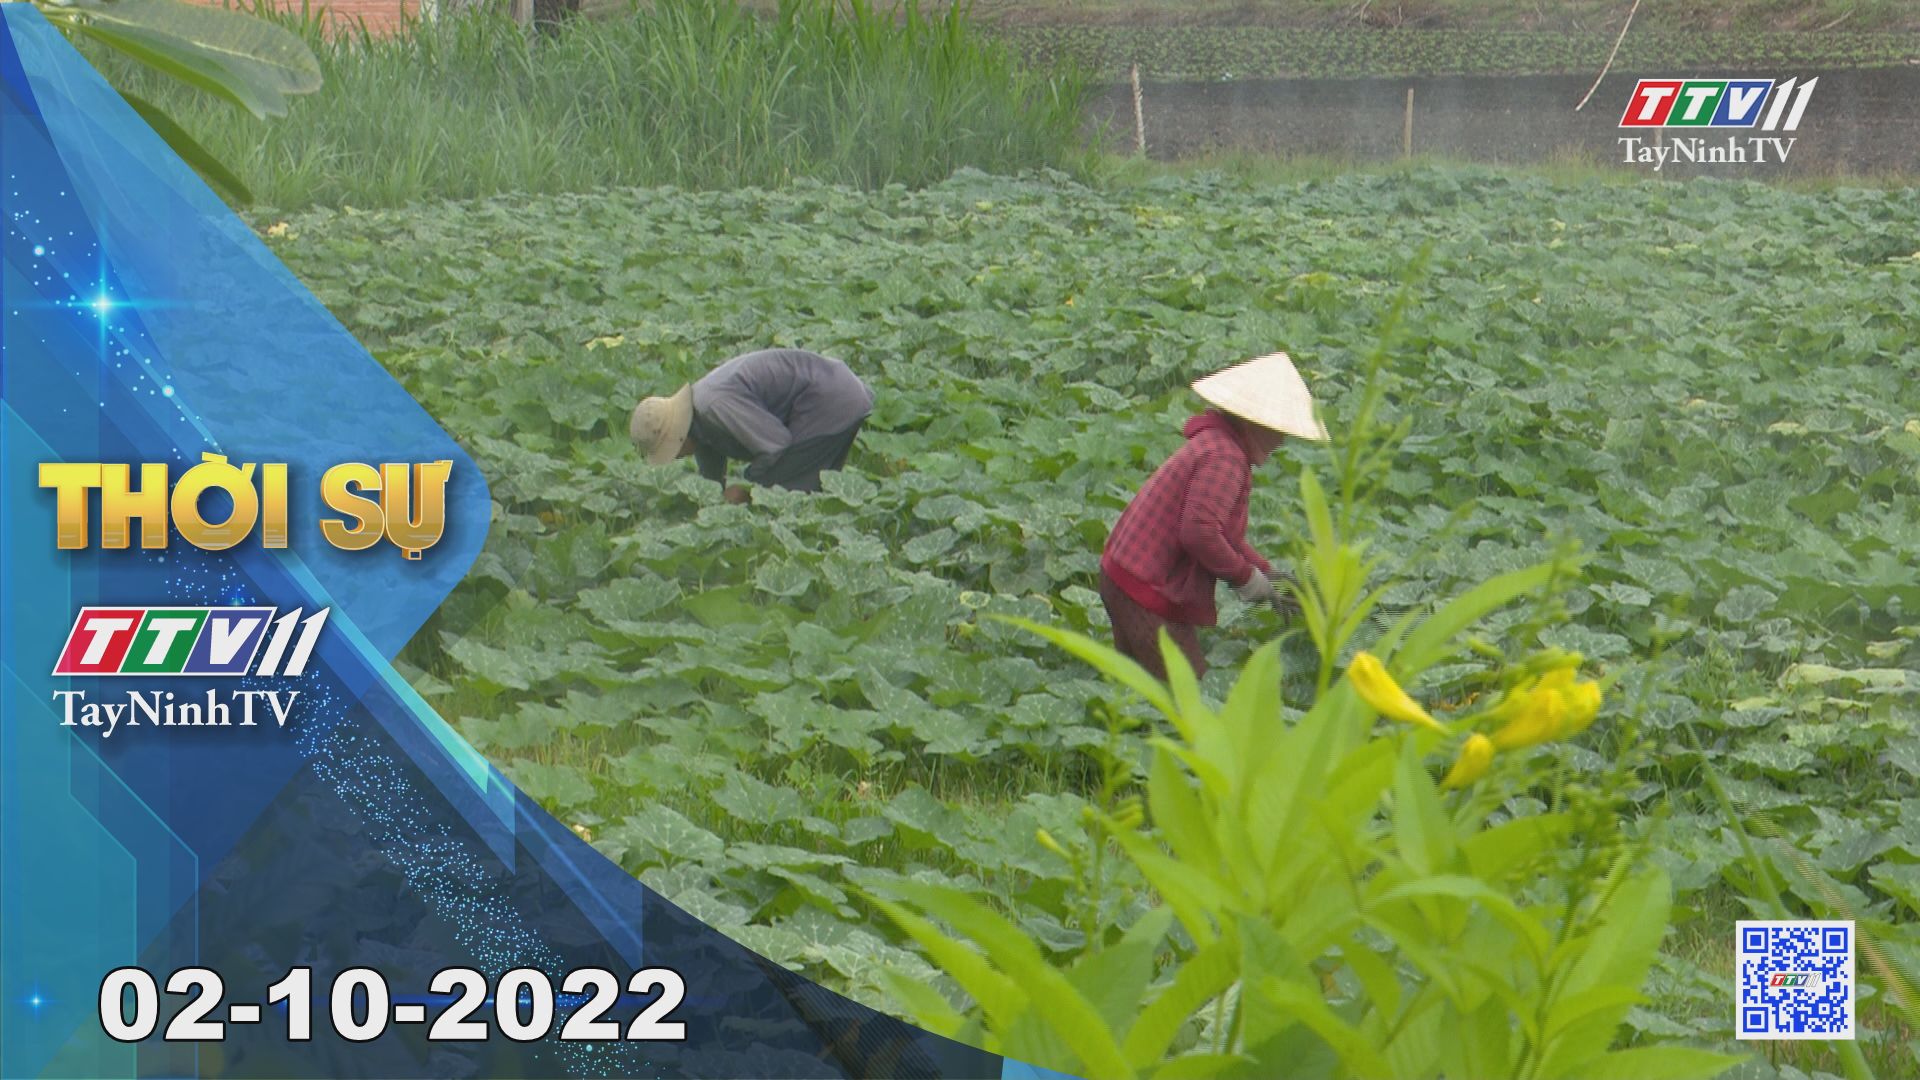 Thời sự Tây Ninh 02-10-2022 | Tin tức hôm nay | TayNinhTV